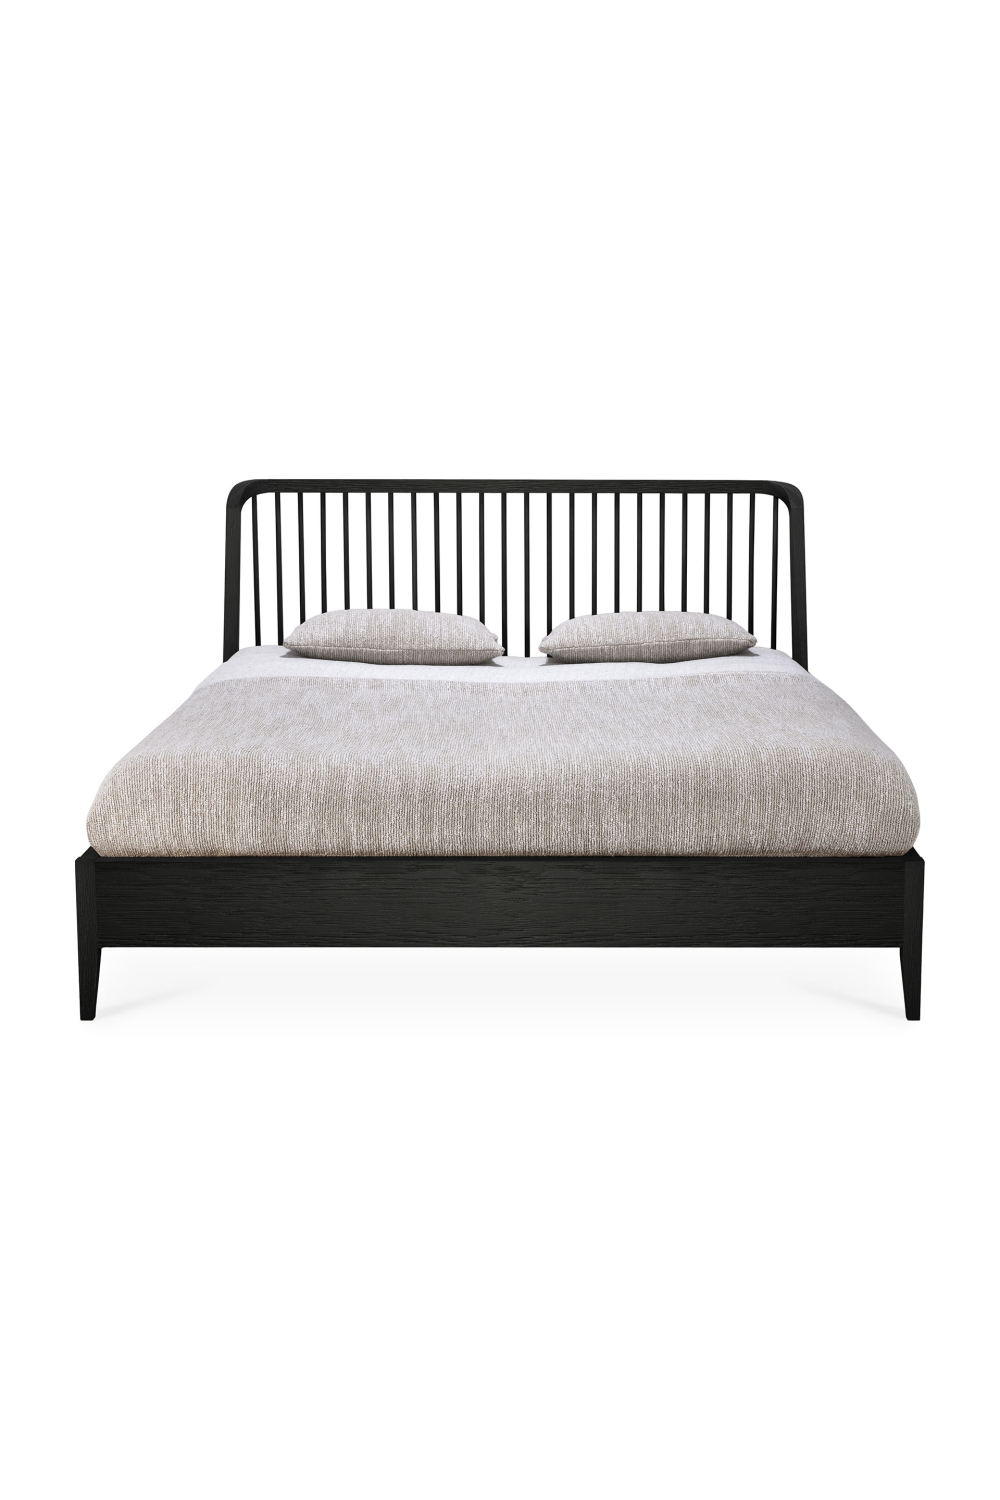 Black Solid Oak Bed | Ethnicraft Spindle | Oroa.com